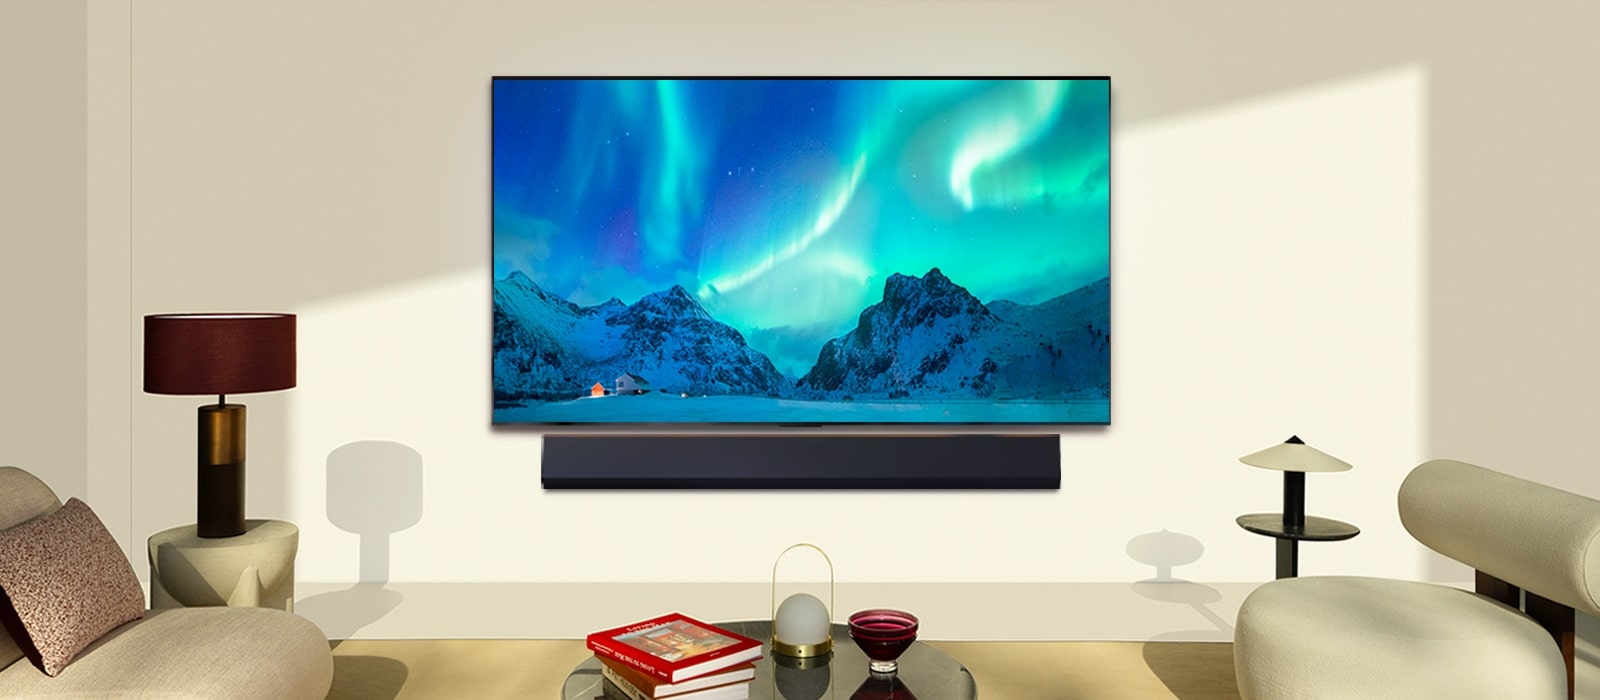 LG OLED TV un LG skaļrunis modernā dzīvojamā istabā dienas laikā. Aurora Borealis ekrāna attēls tiek parādīts, pielāgojot piemērotāko spilgtuma līmeni.